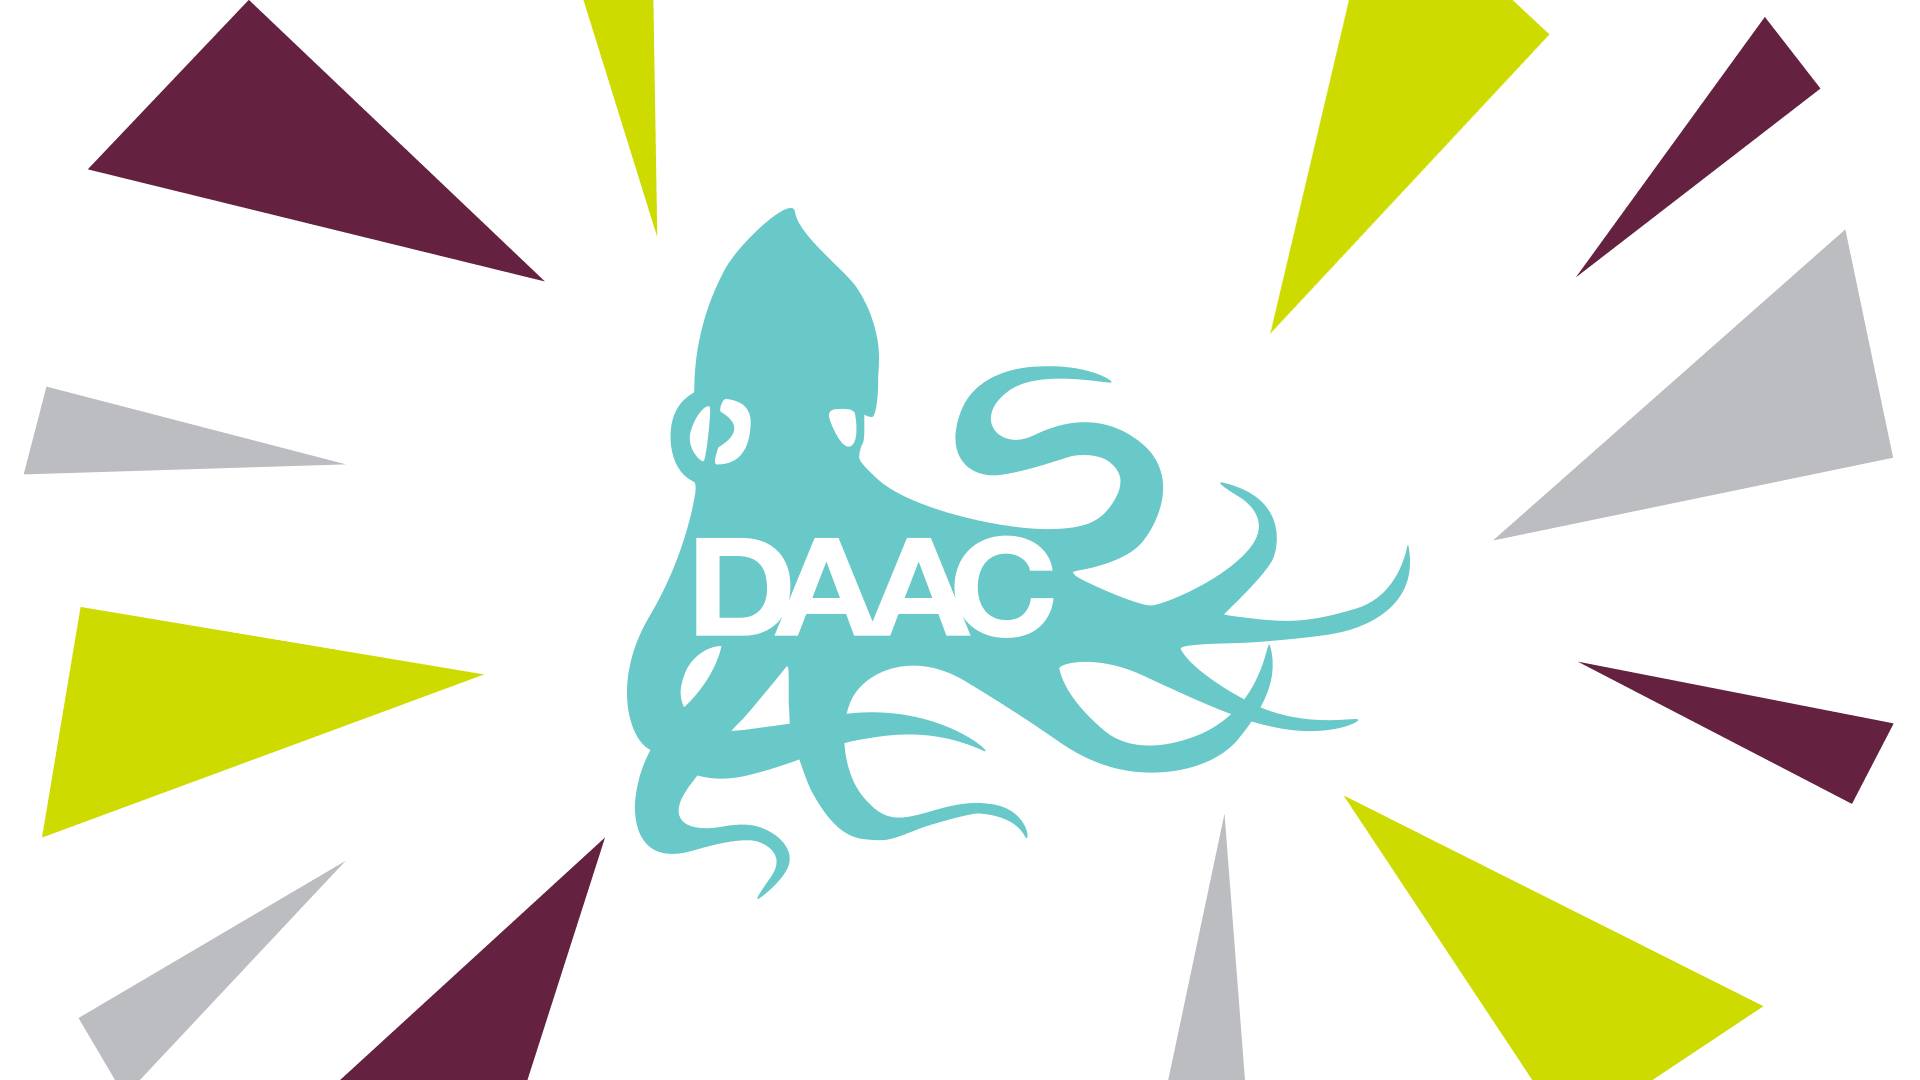 Teal DAACtopus in a starburst